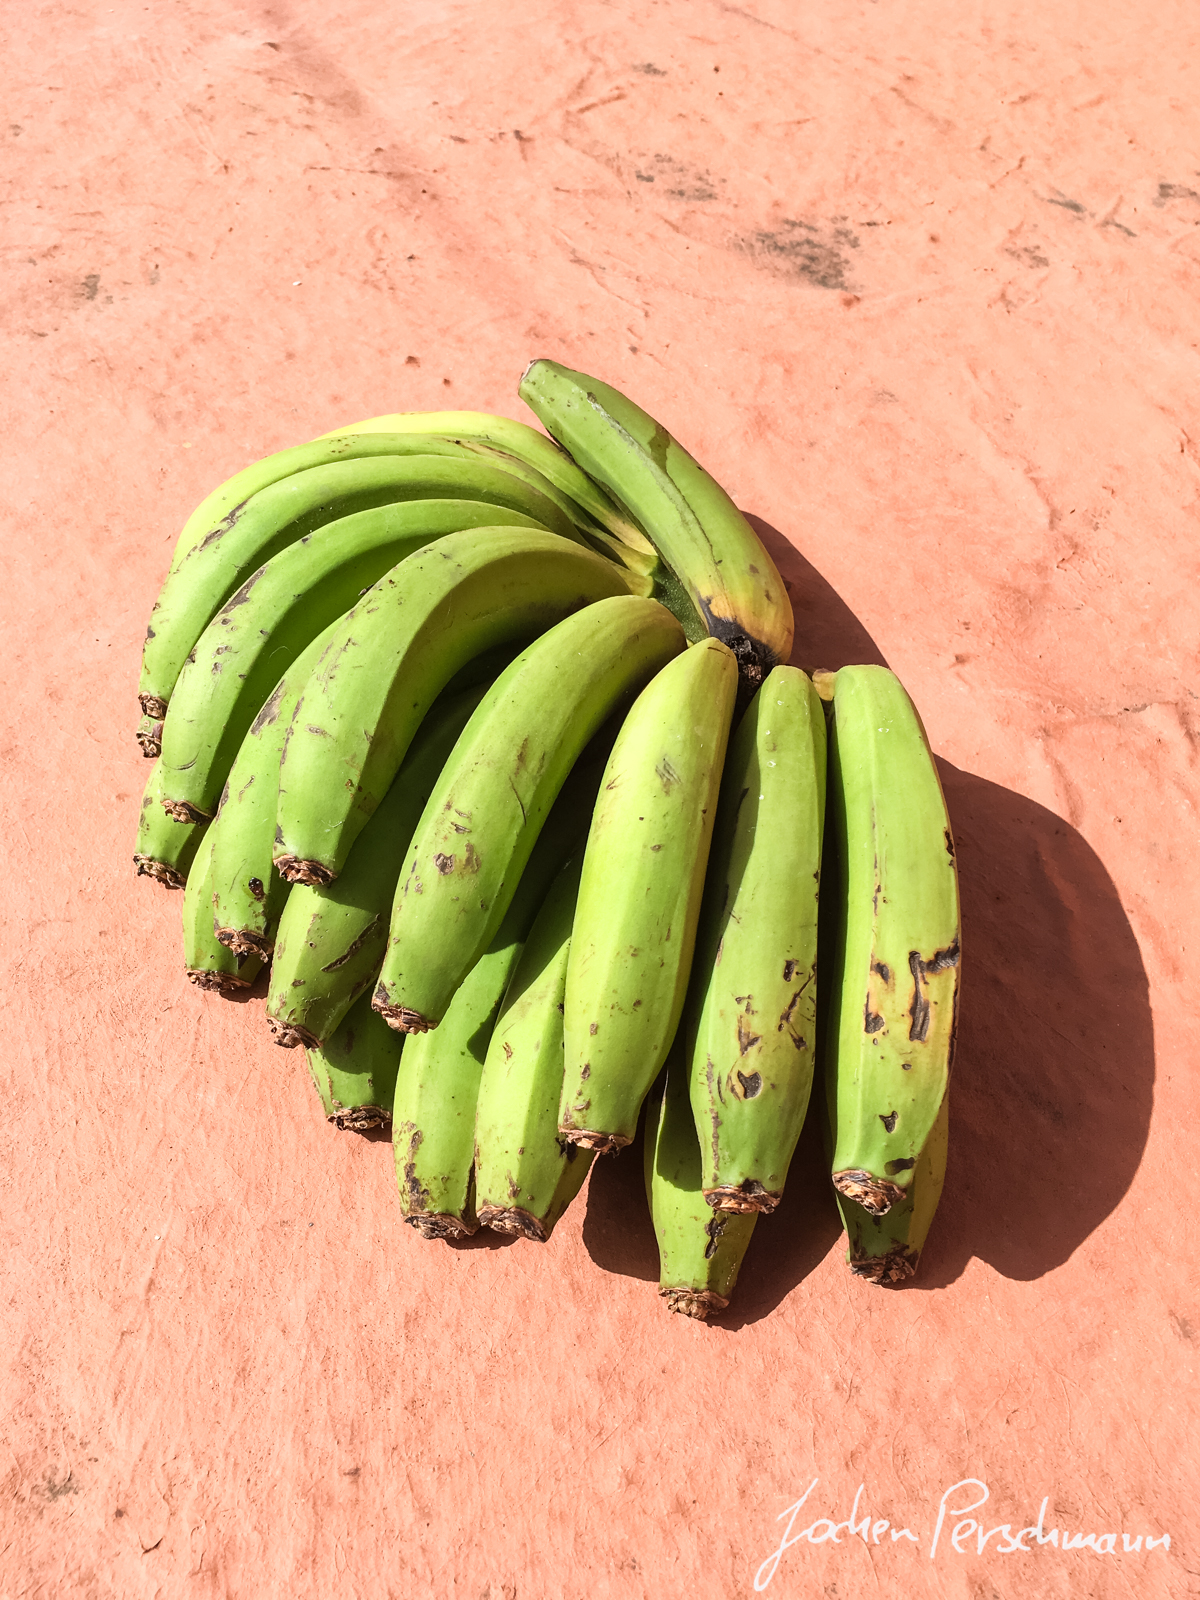 Auf der Nordinsel herrscht Subtropisches Klima sodass viele Früchte wie Bananen oder Maracujas angebaut werden